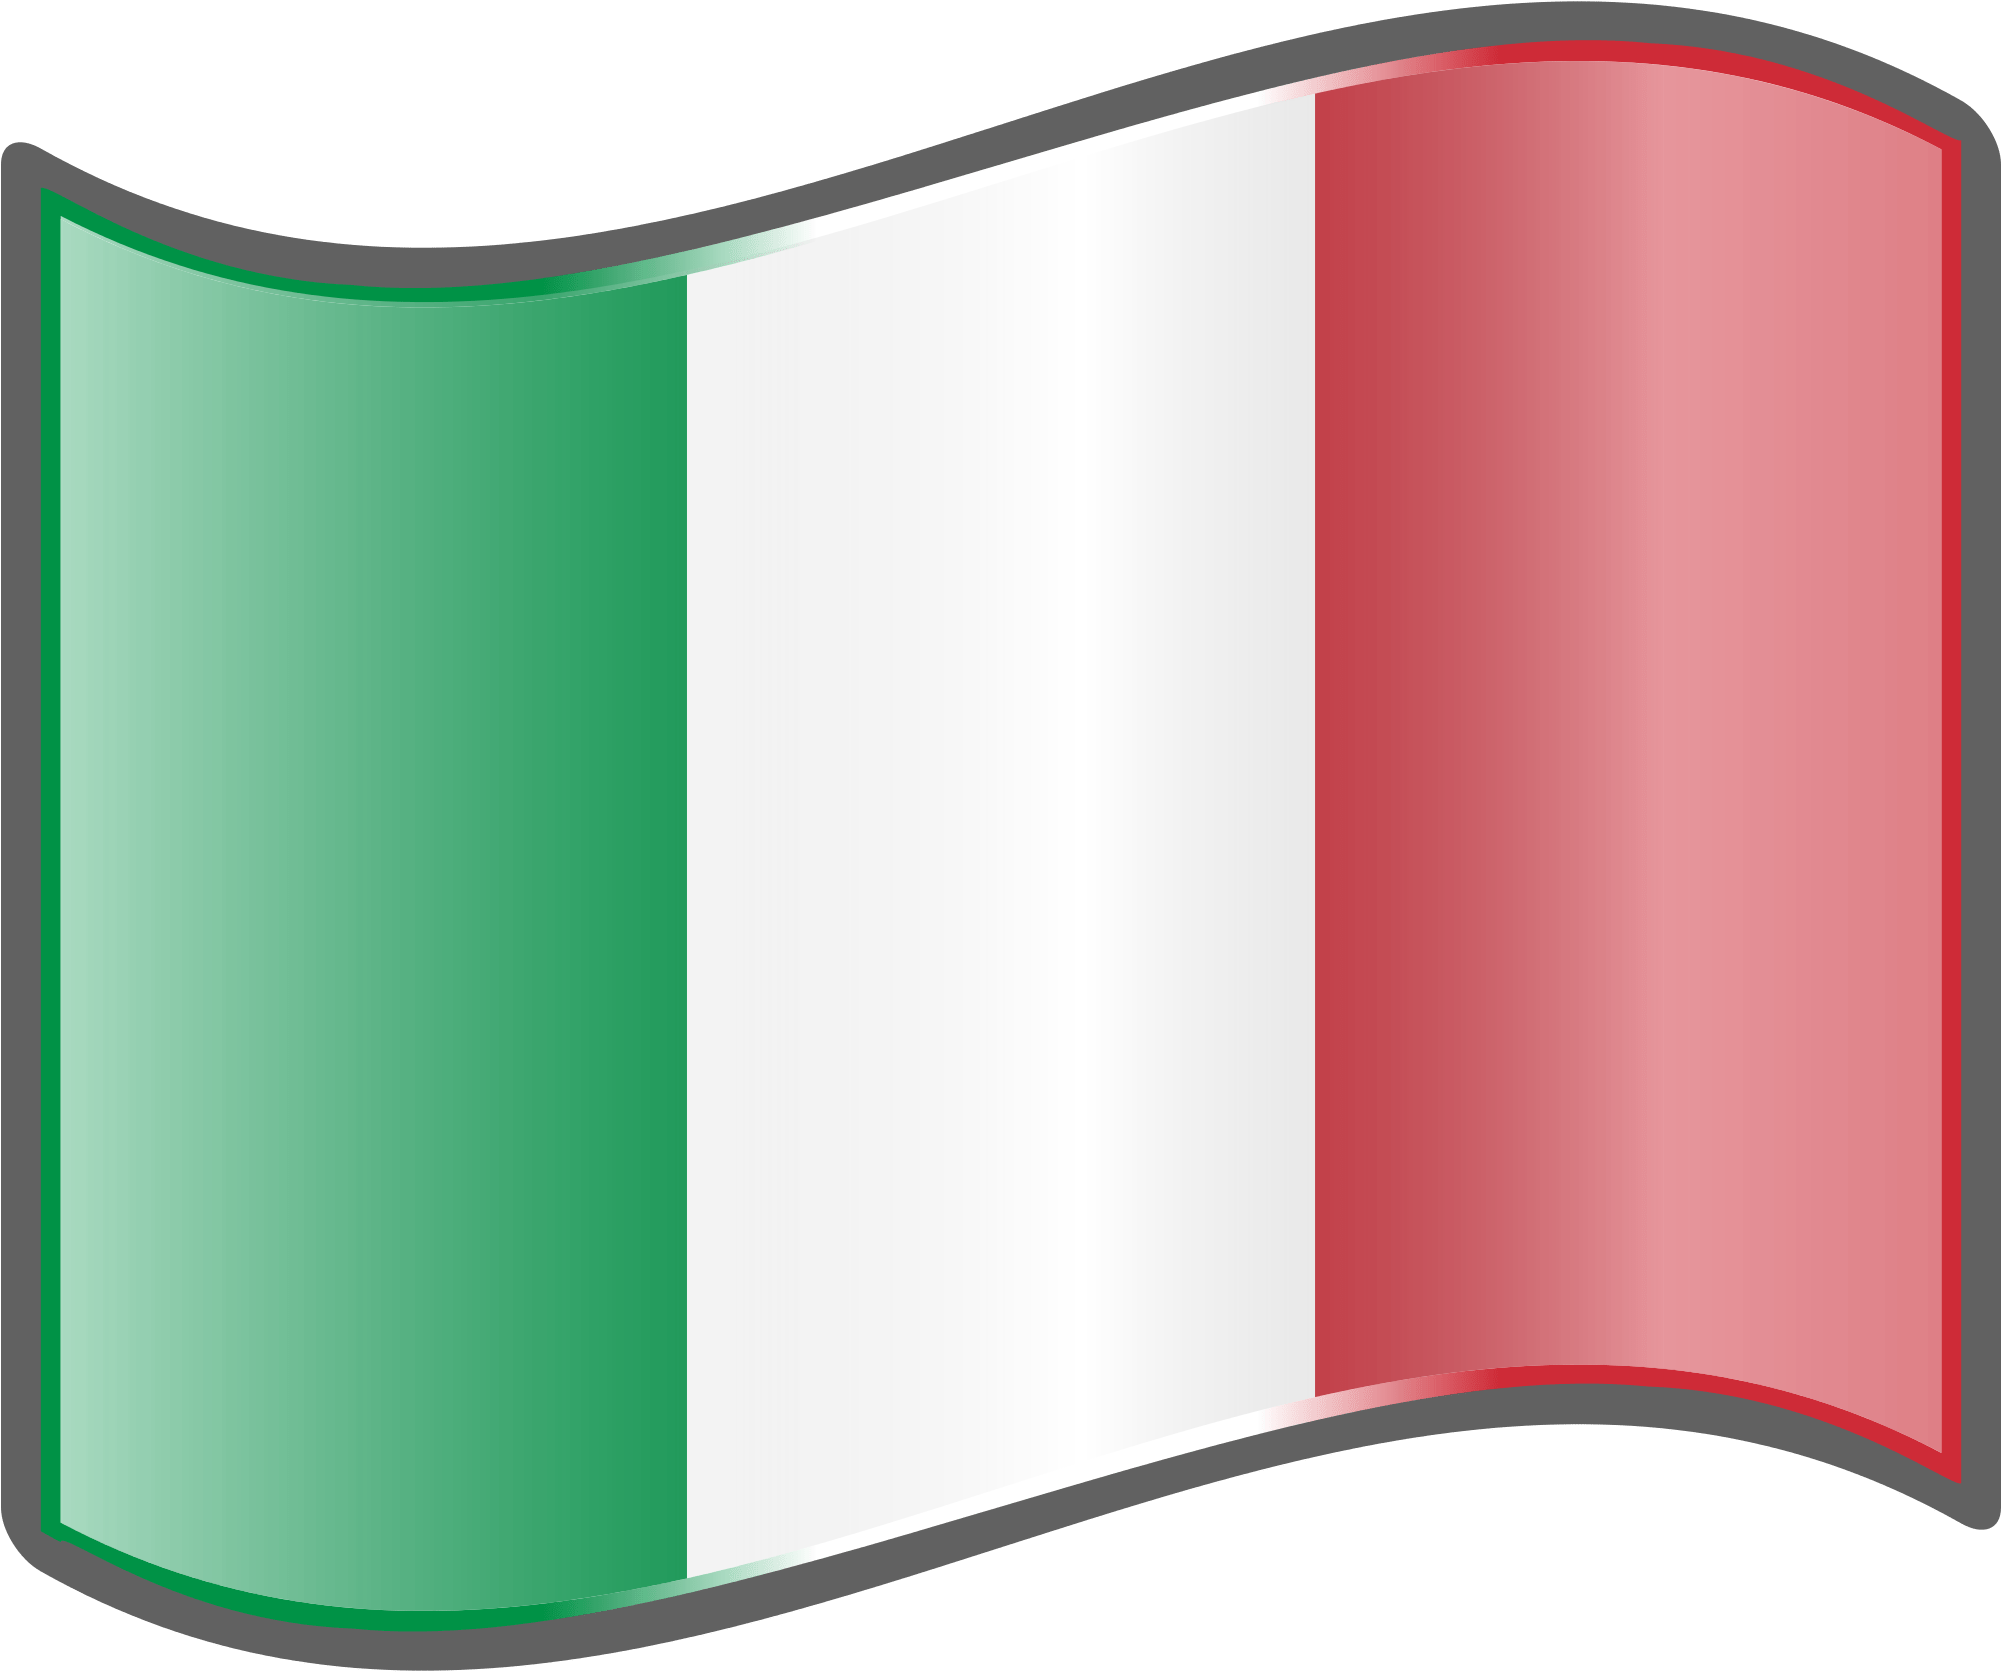 Italian clipart transparent, Italian transparent ...